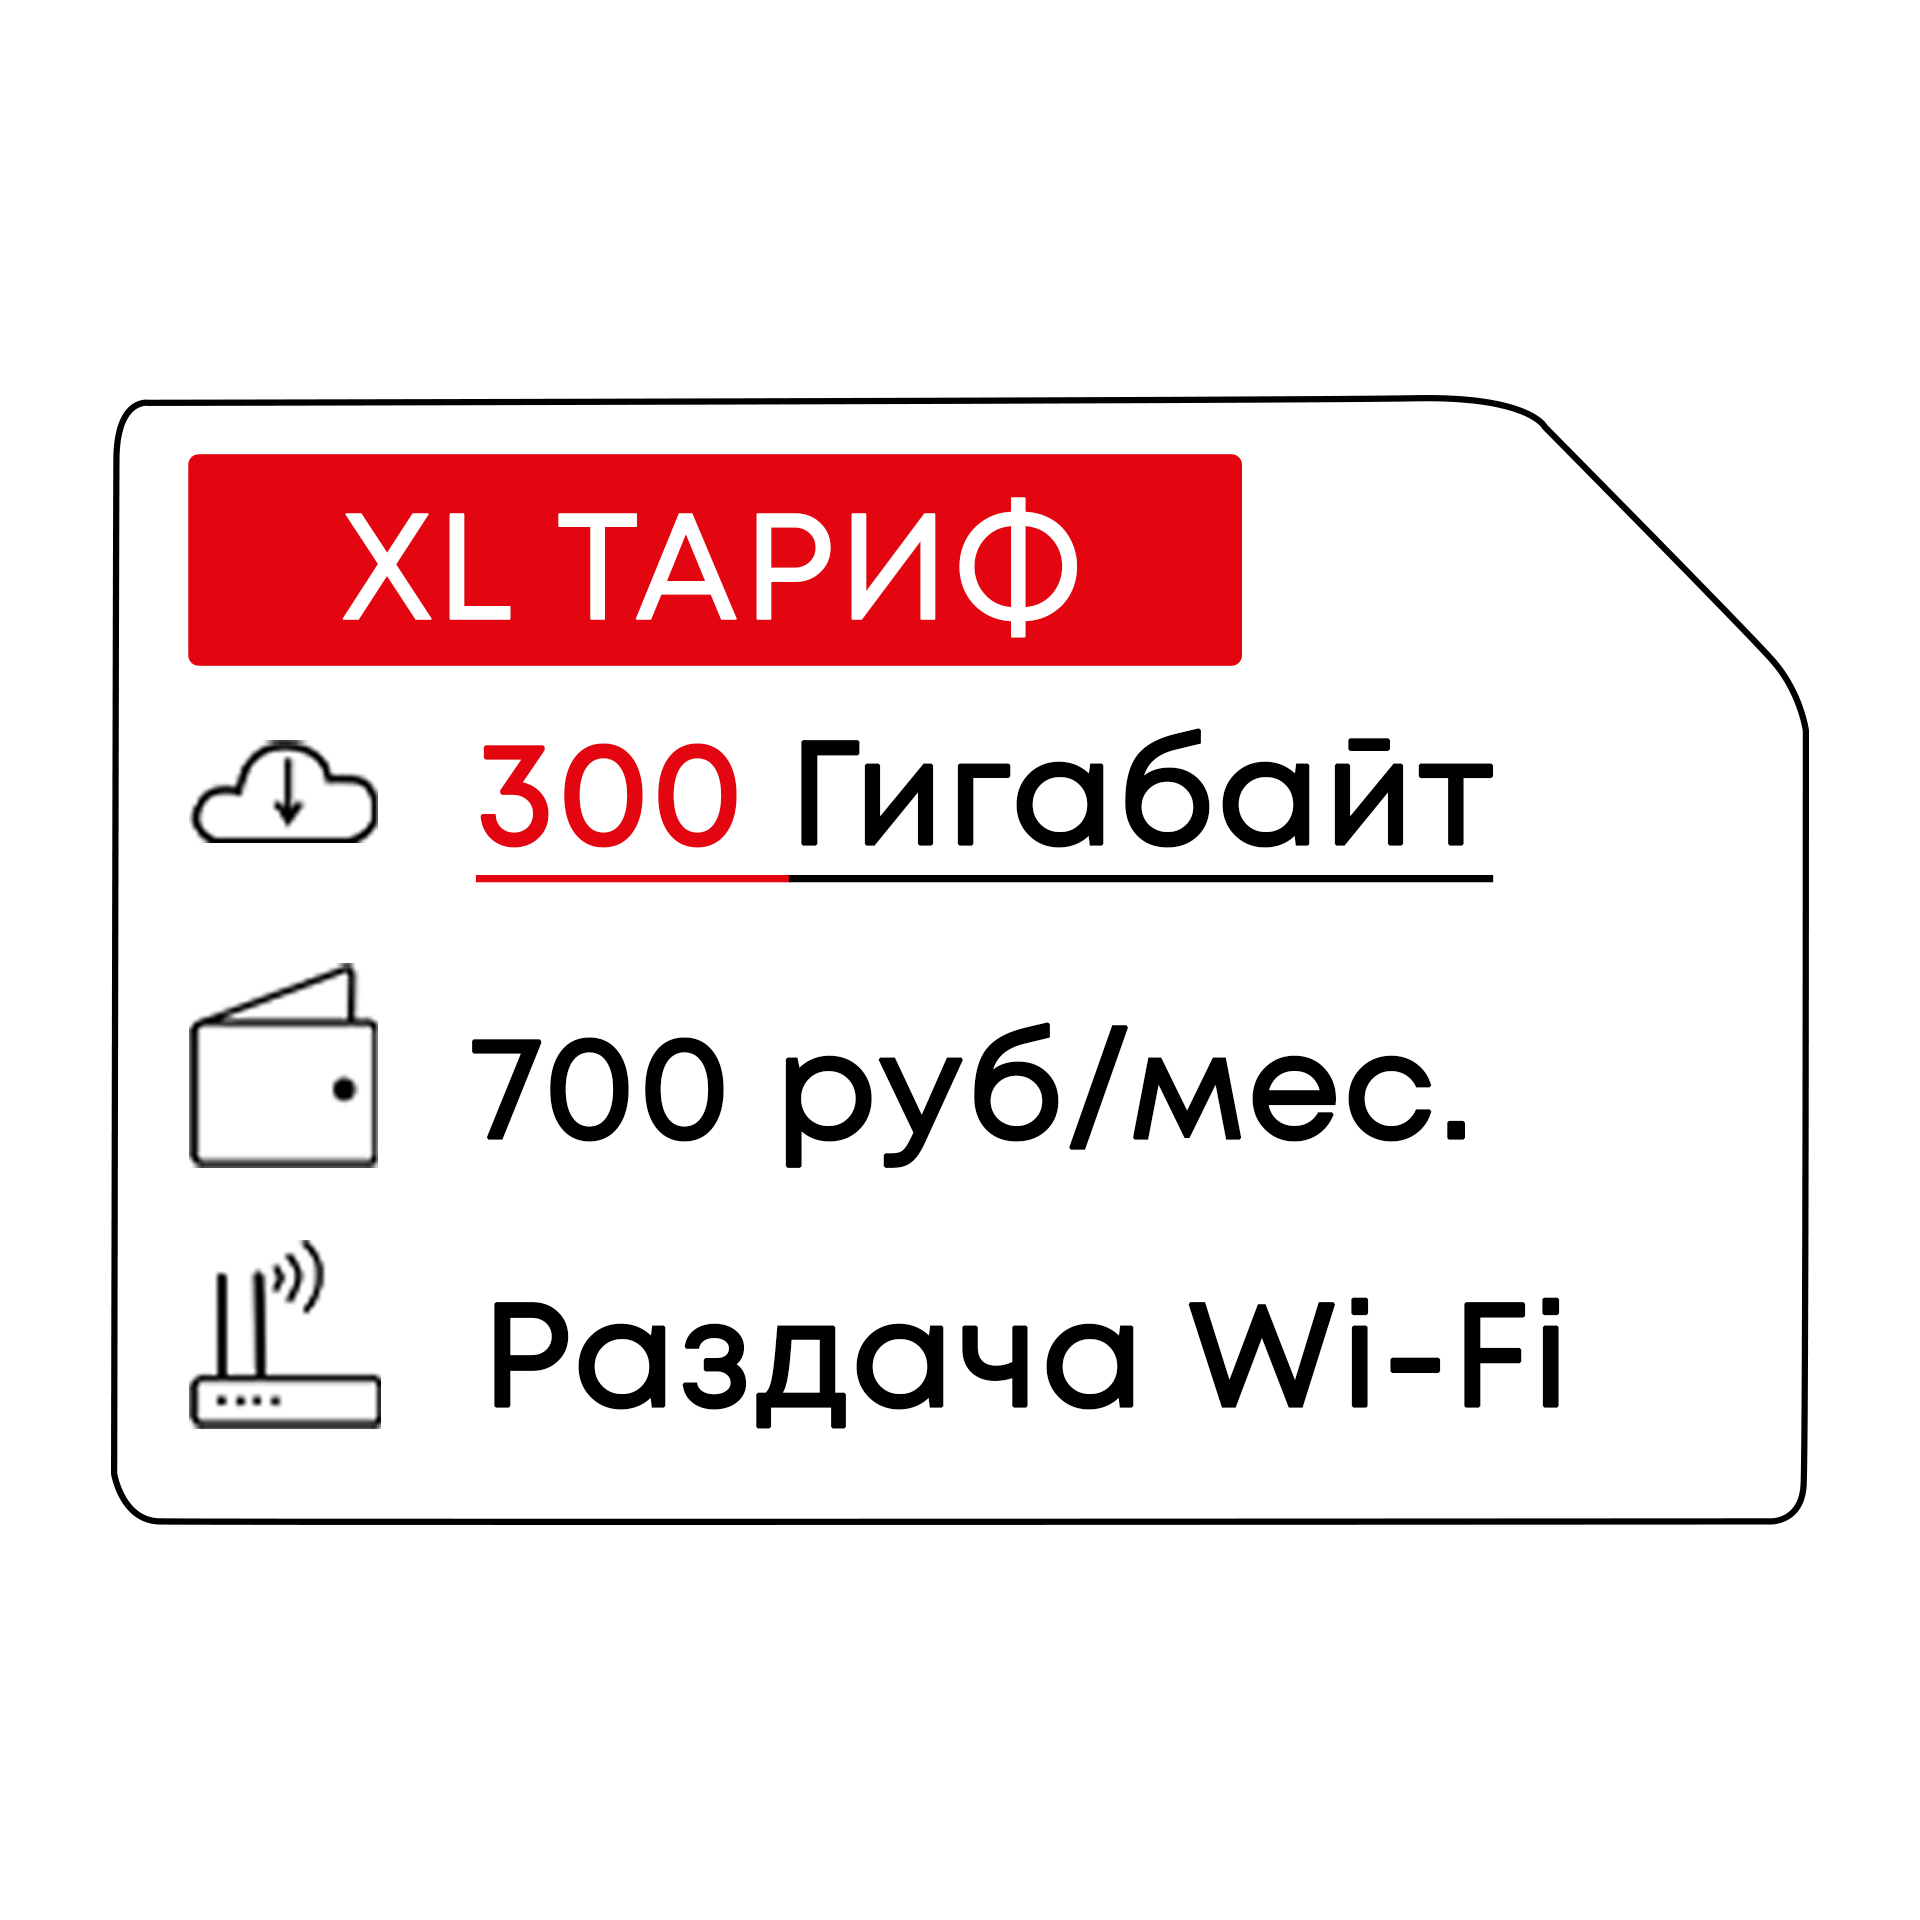 4G модем с Wi-Fi от OLAX 300 ГБ на МТС